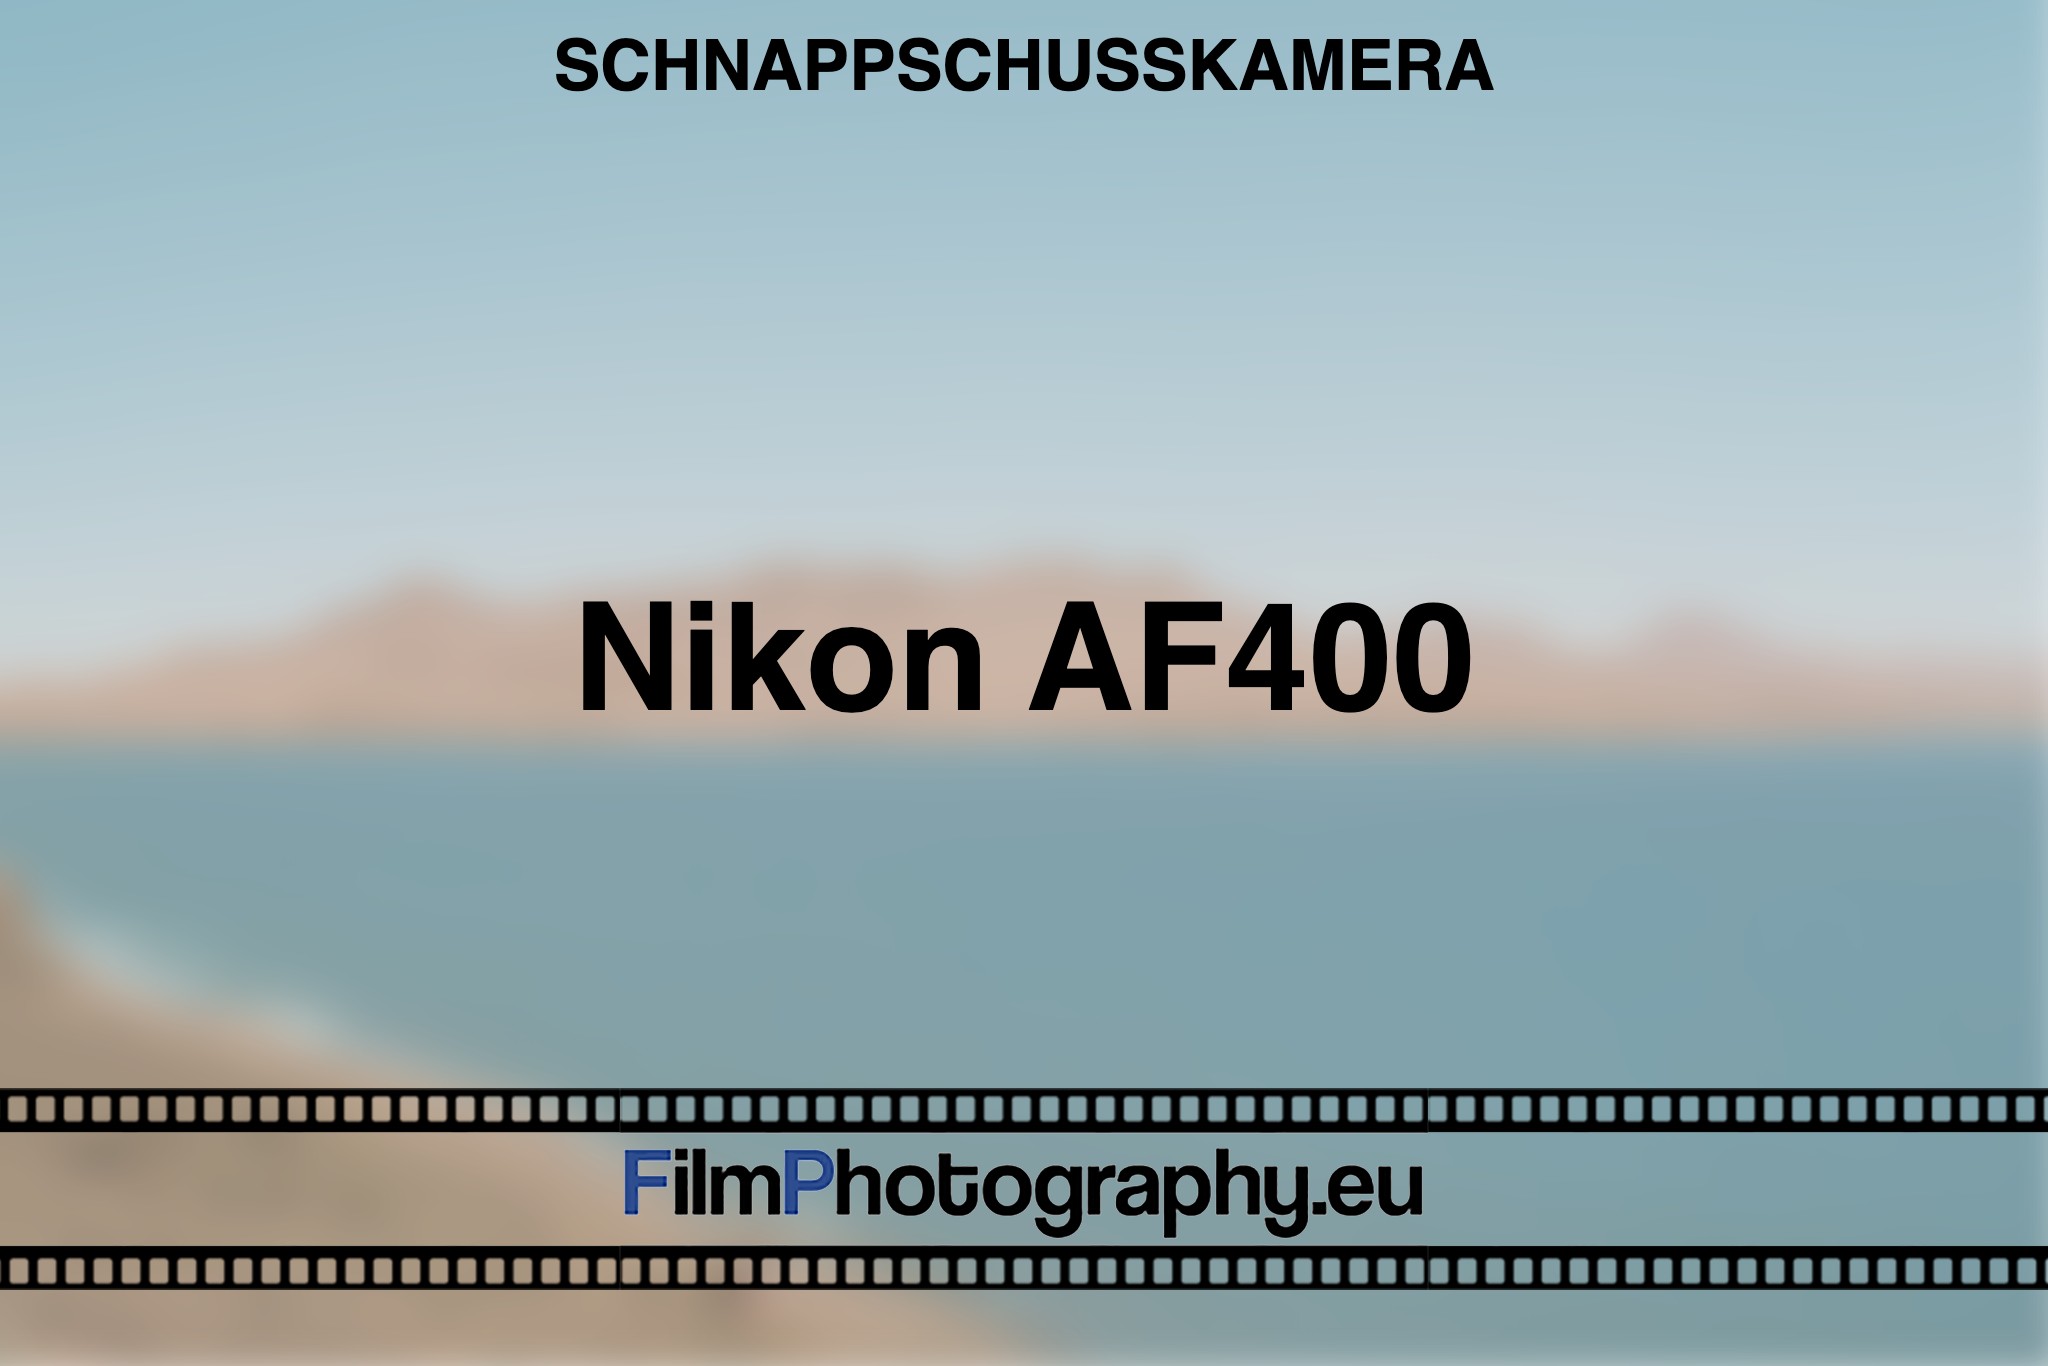 nikon-af400-schnappschusskamera-bnv